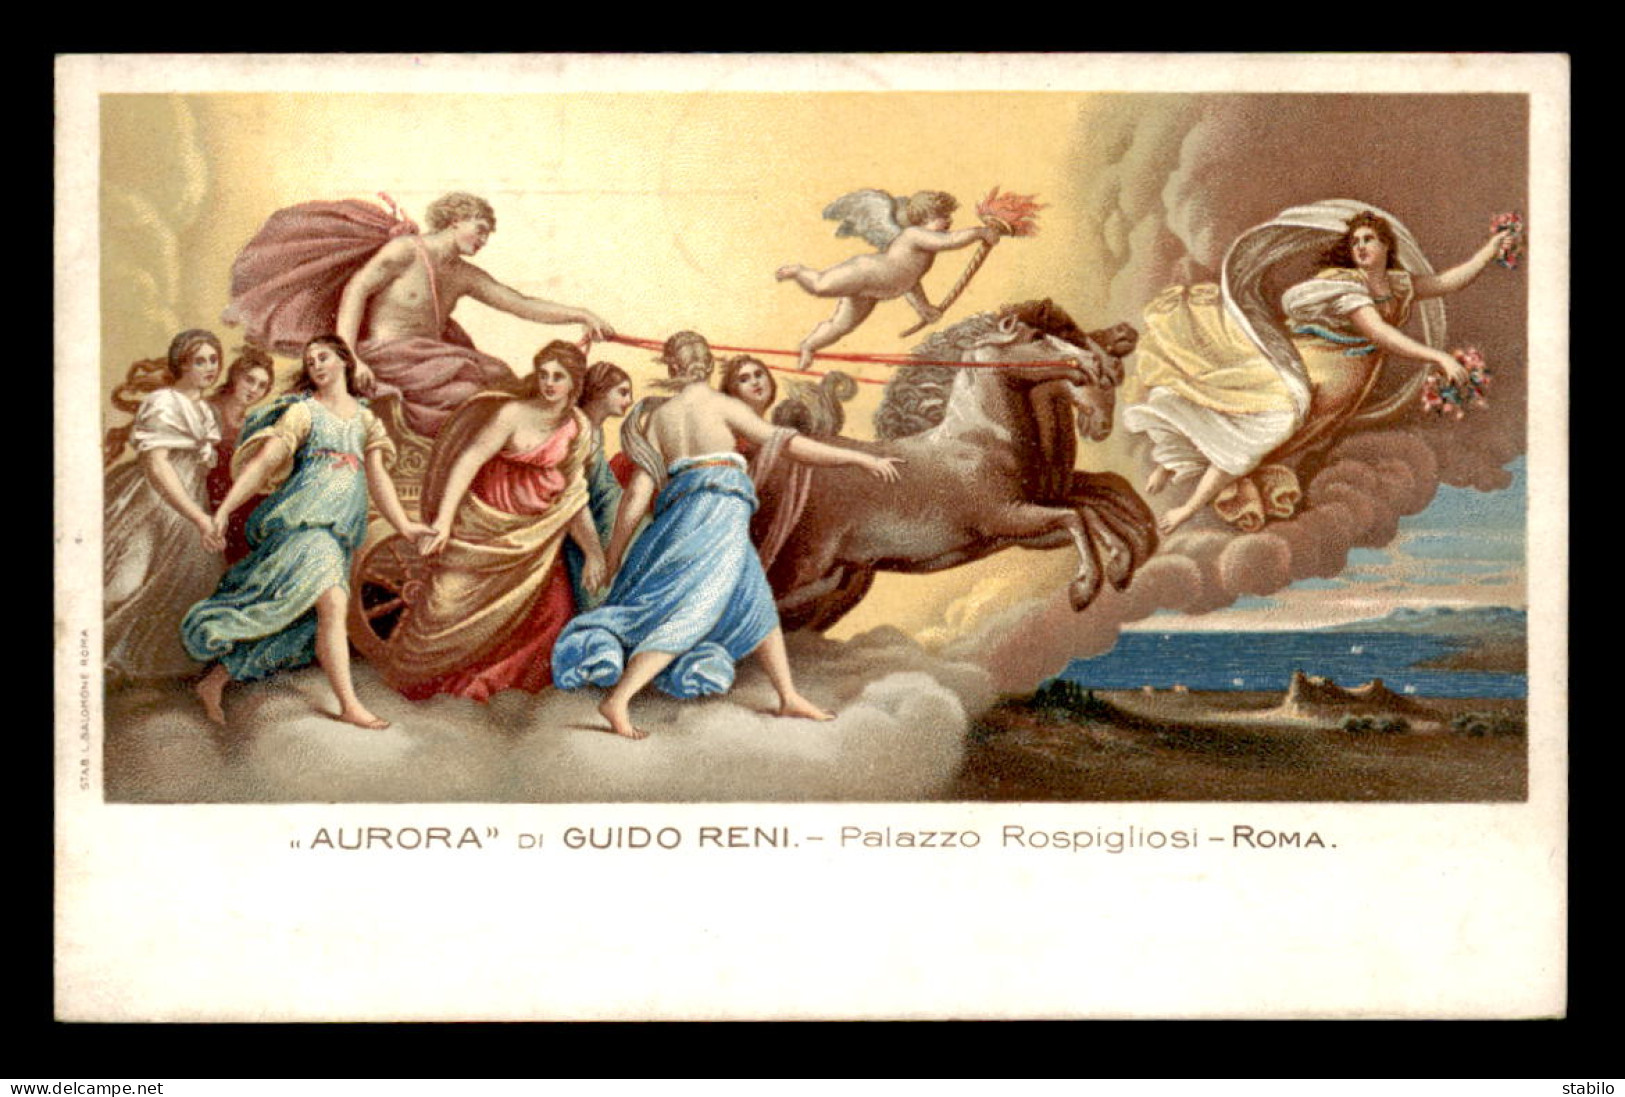 ITALIE - ROMA - PALAZZO ROSPIGLIOSI - AURORA, DI GUIDO RENI - Musei